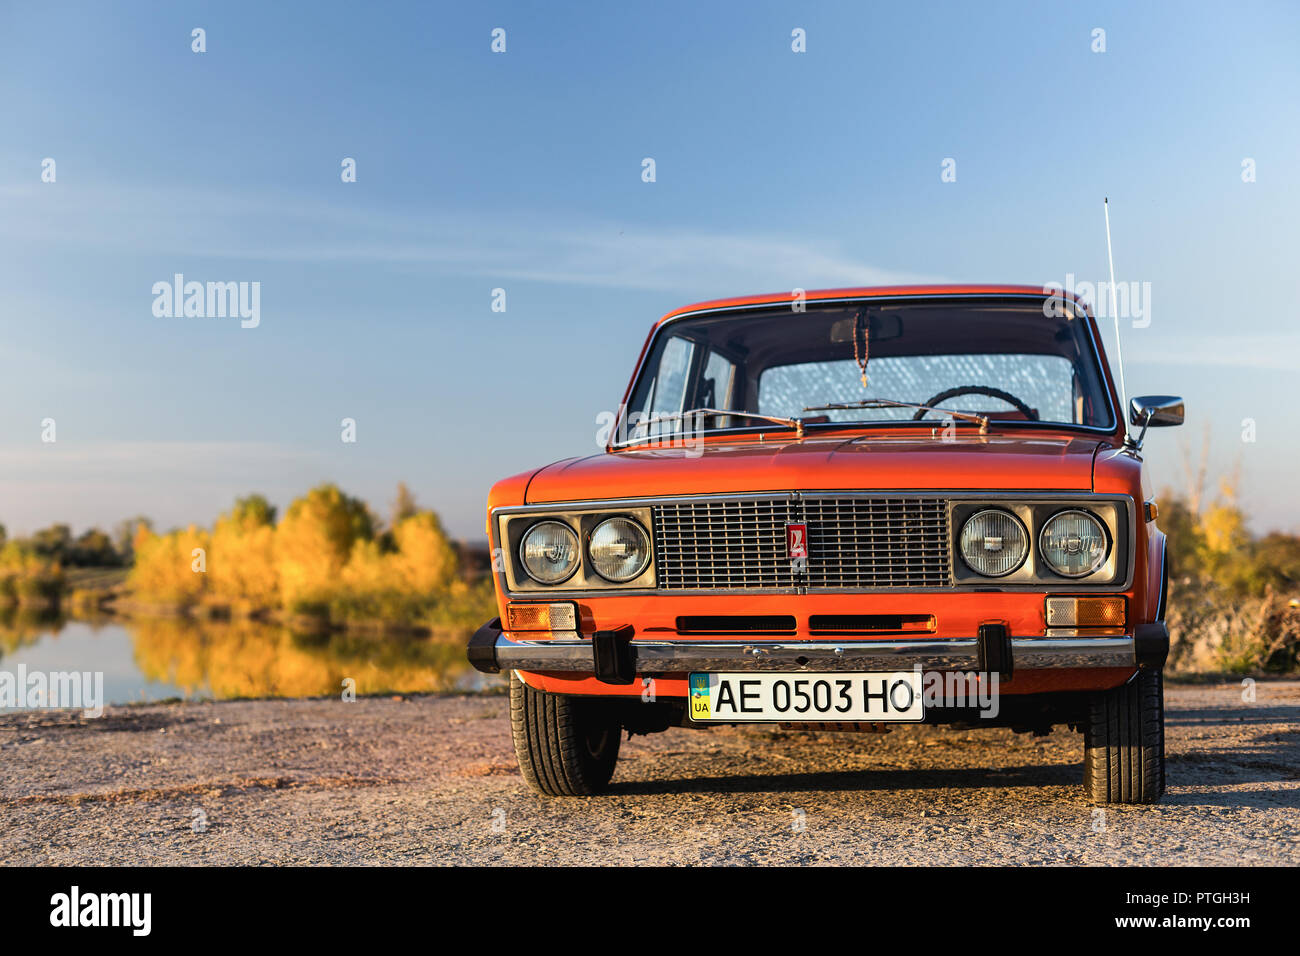 PERESHCHEPINO, UKRAINE - Oktober 12, 2014: Zhiguli VAZ 2106 original Orange, in der UDSSR in den 70er Jahren veröffentlicht. Auto in der Nähe des Flusses geparkt, autuman Zeit Stockfoto